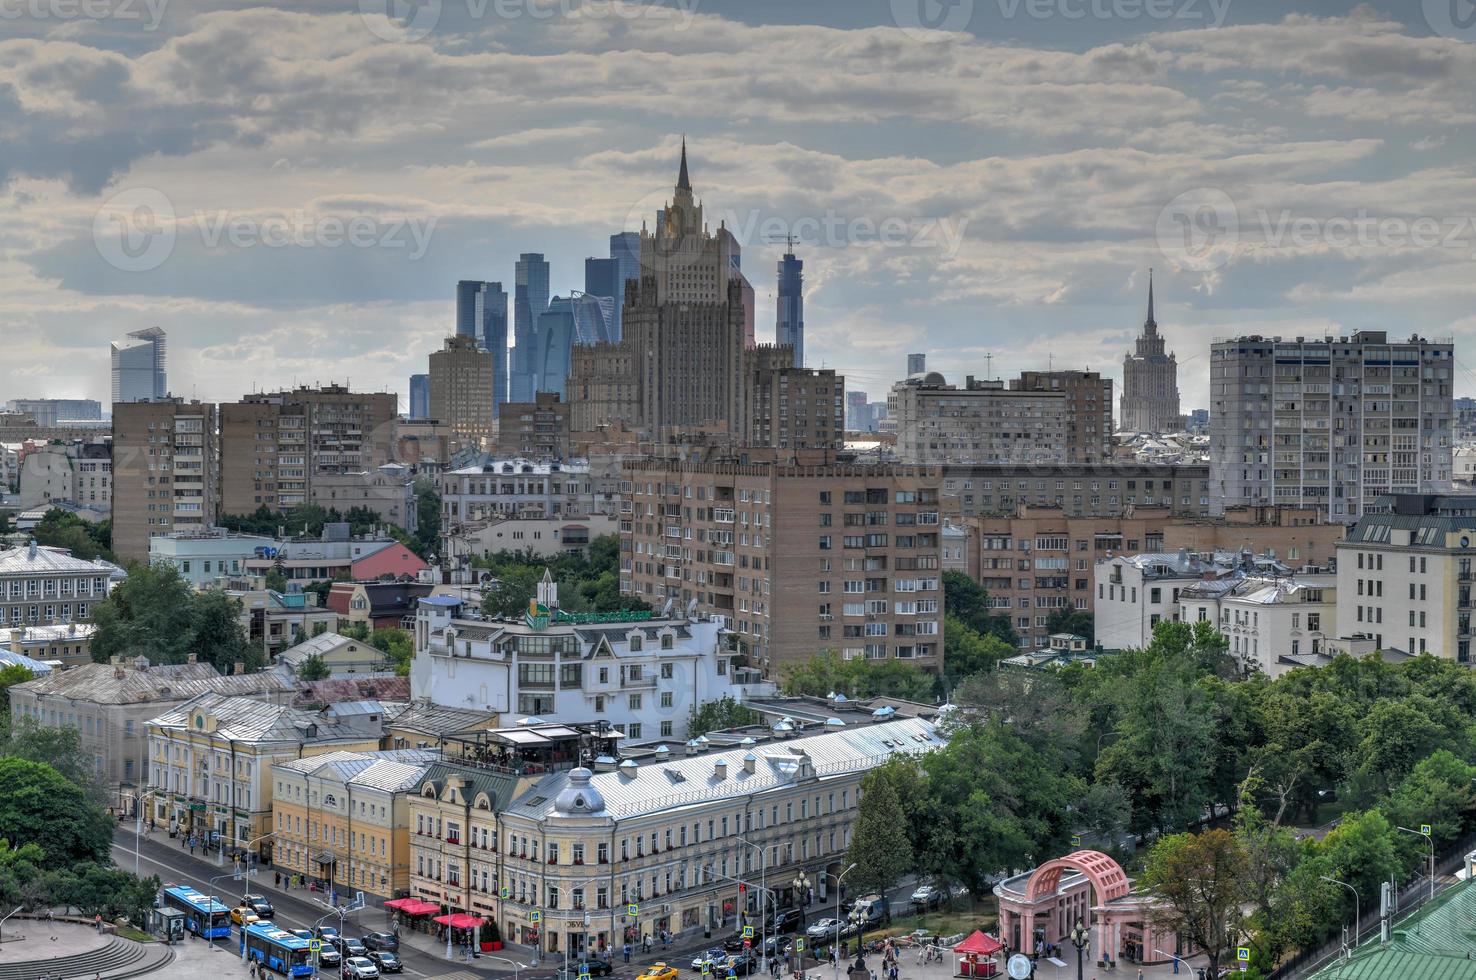 vue panoramique sur les toits du centre-ville de moscou en russie. photo